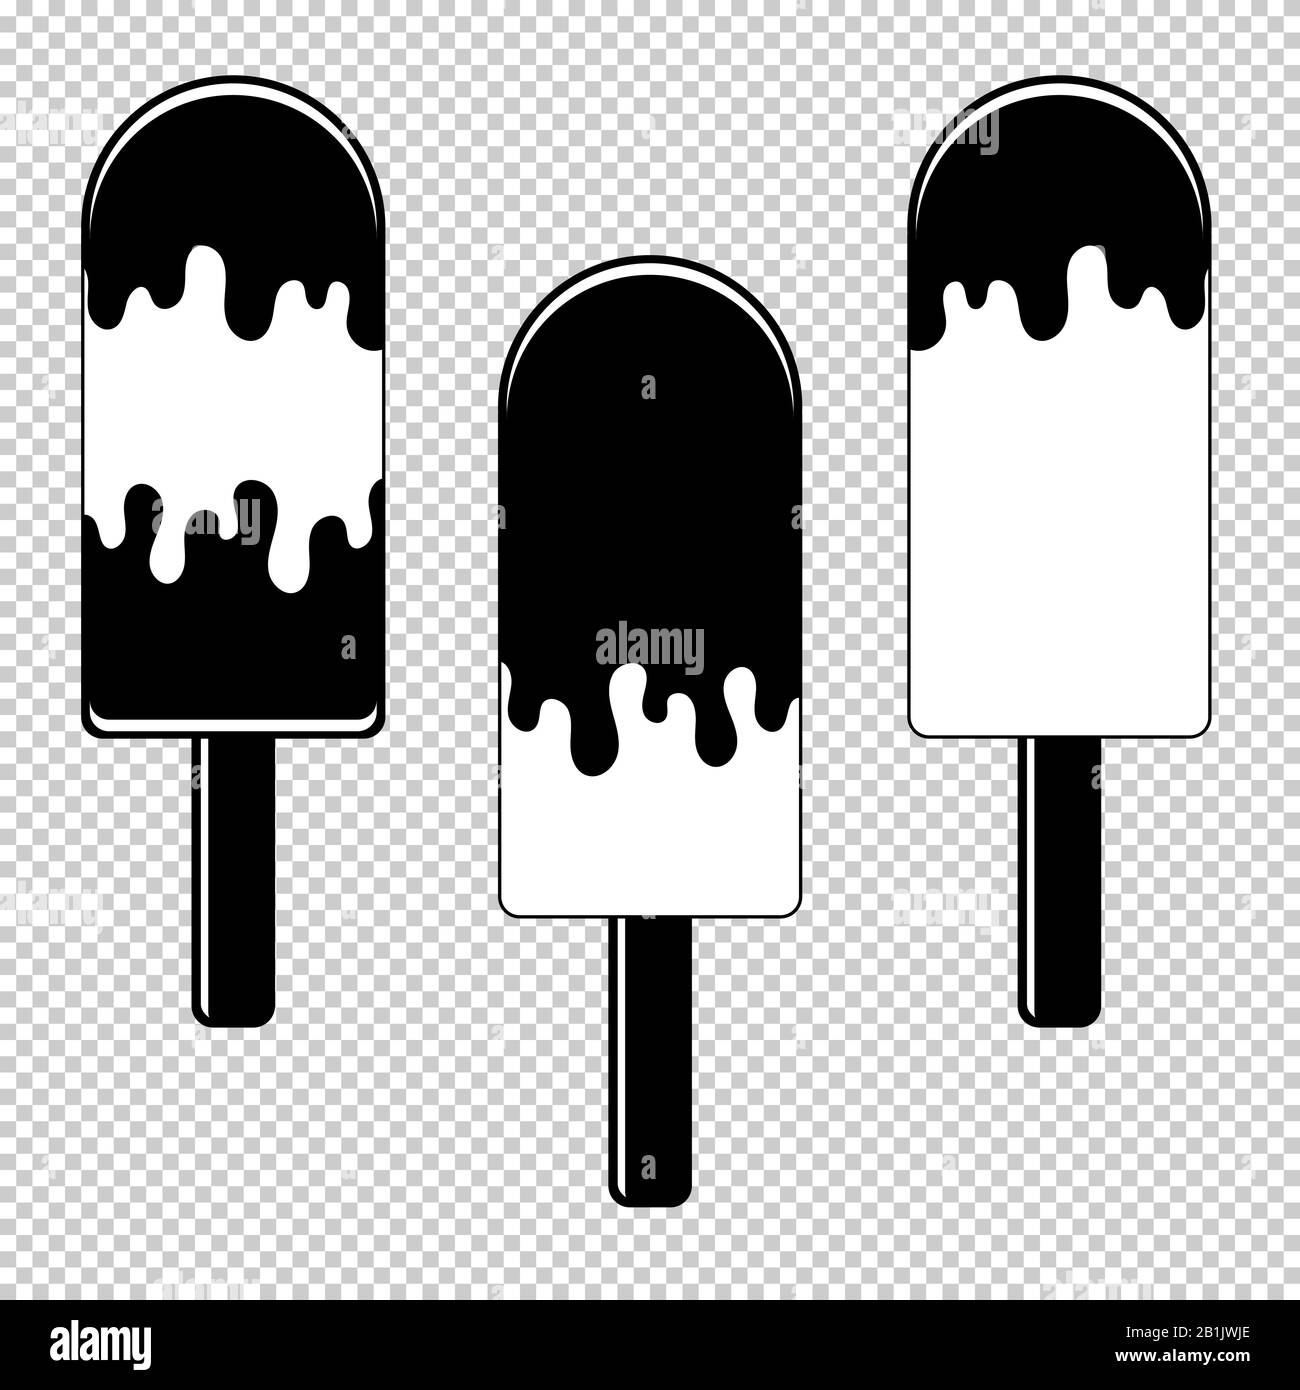 Un set di silhouette piatte nere isolate di gelato condito con glassa. Su bastoni di legno. Su sfondo trasparente. Disegno con contorno nero Illustrazione Vettoriale